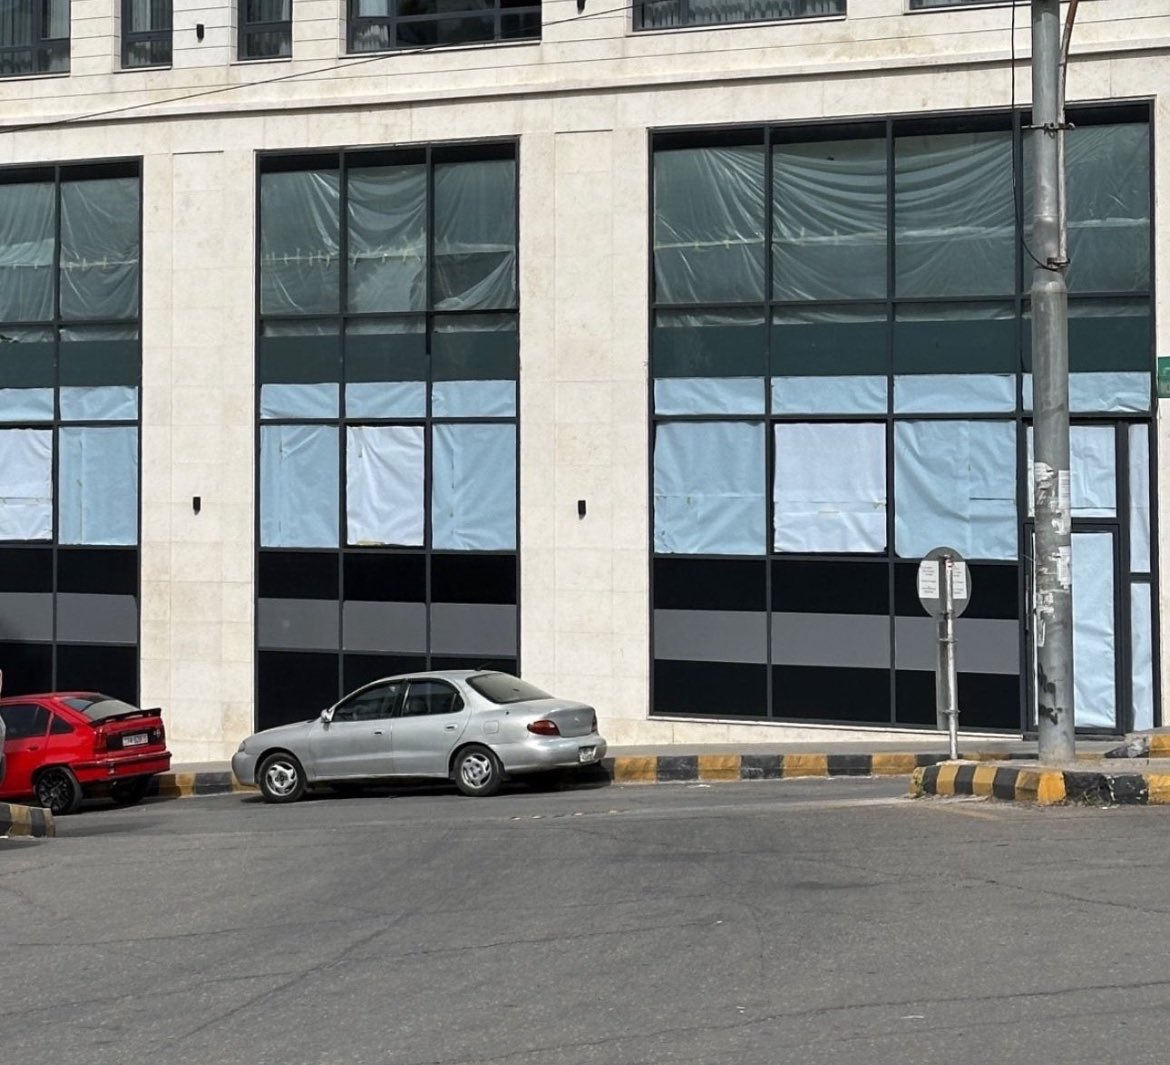 إغلاق فرع لـ ستاربكس في الأردن 

المقاطعة قوة ✊🏻❤️